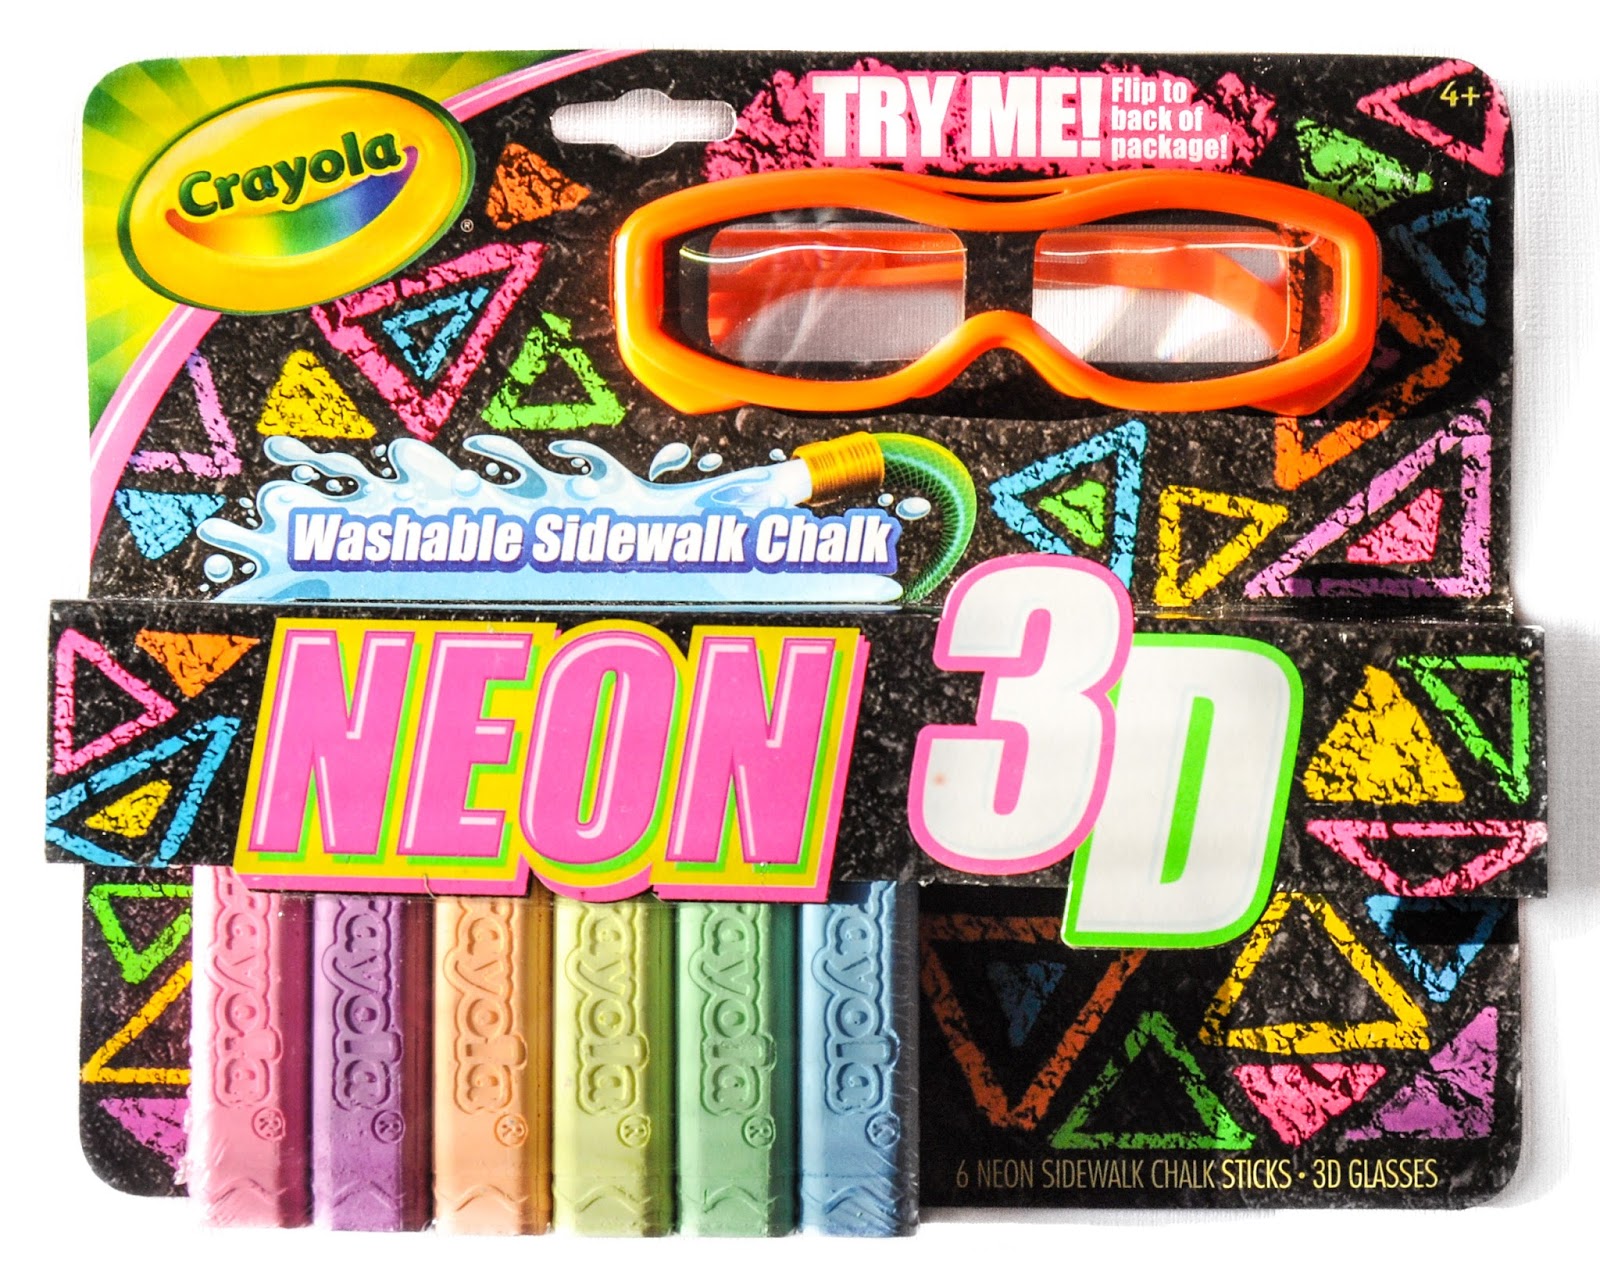 Crayola Neon 3D Sidewalk Chalk: What's Inside the Box